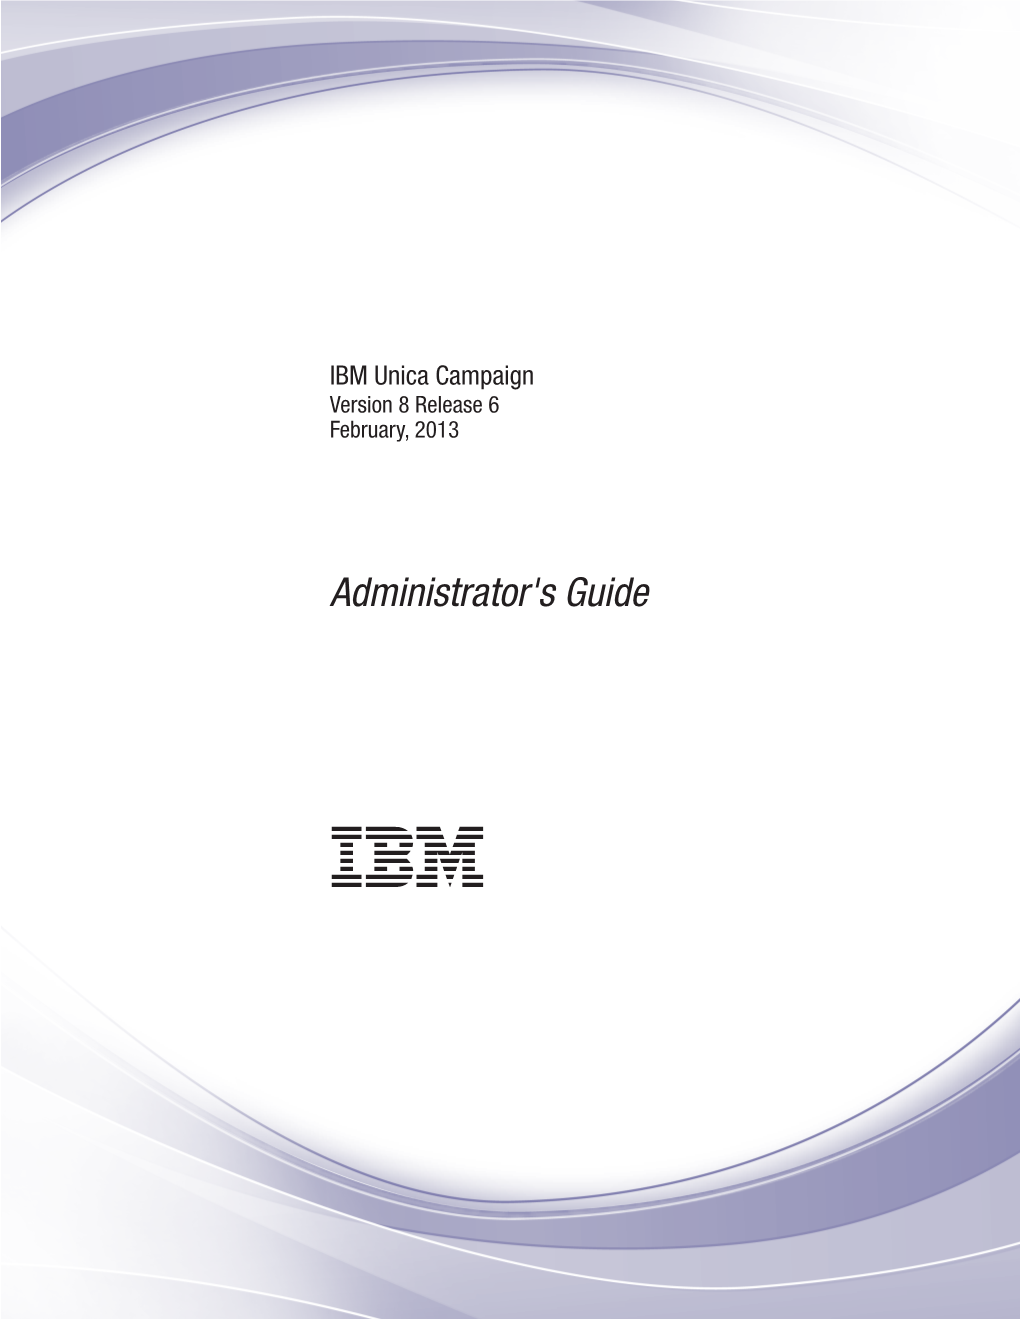 IBM Unica Campaign: Administrator's Guide to Remove a Dimension Hierarchy